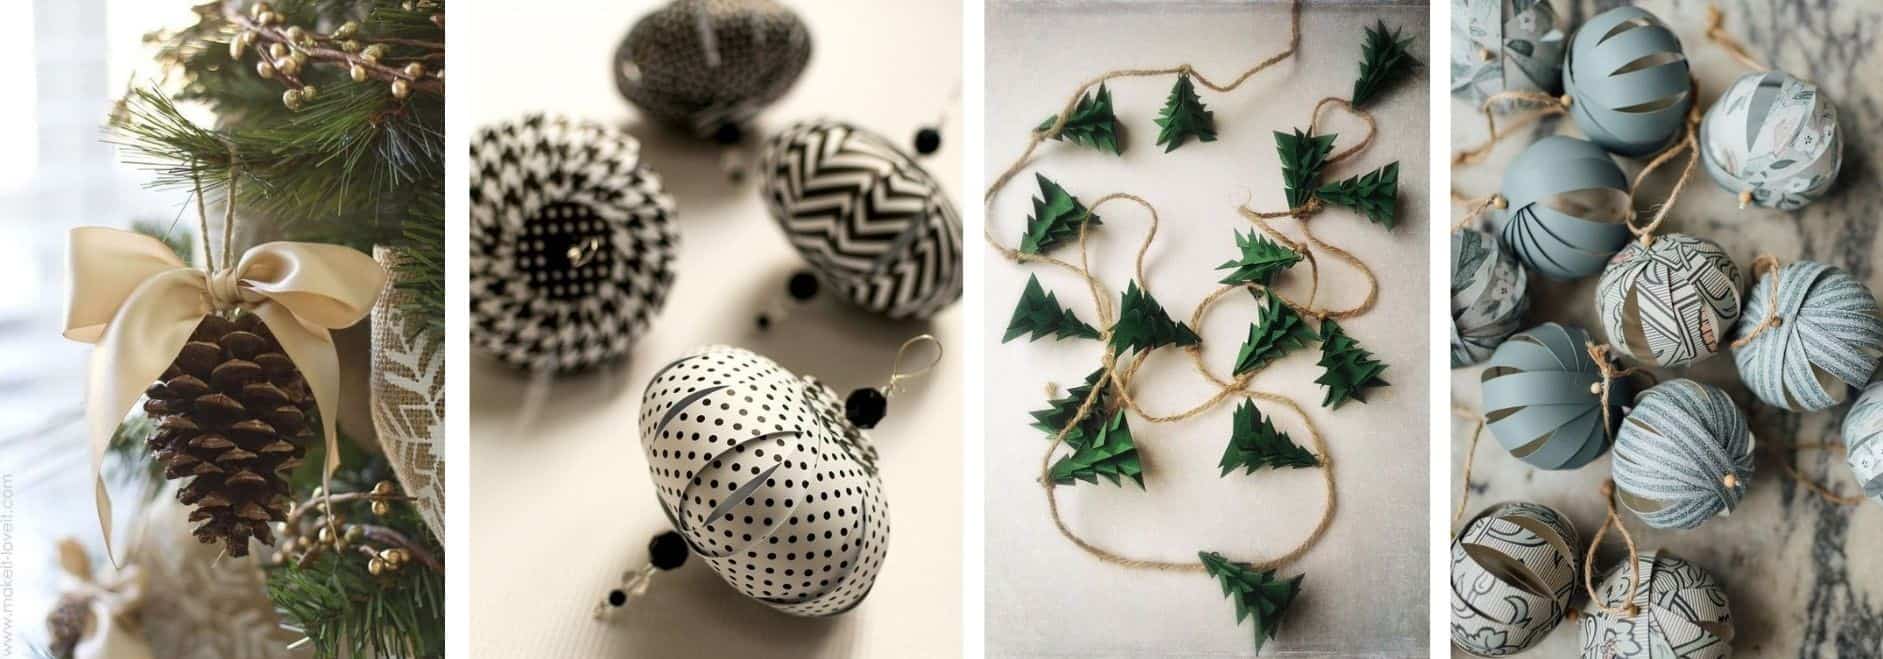 decorațiuni de Crăciun handmade - ghirlande decorative